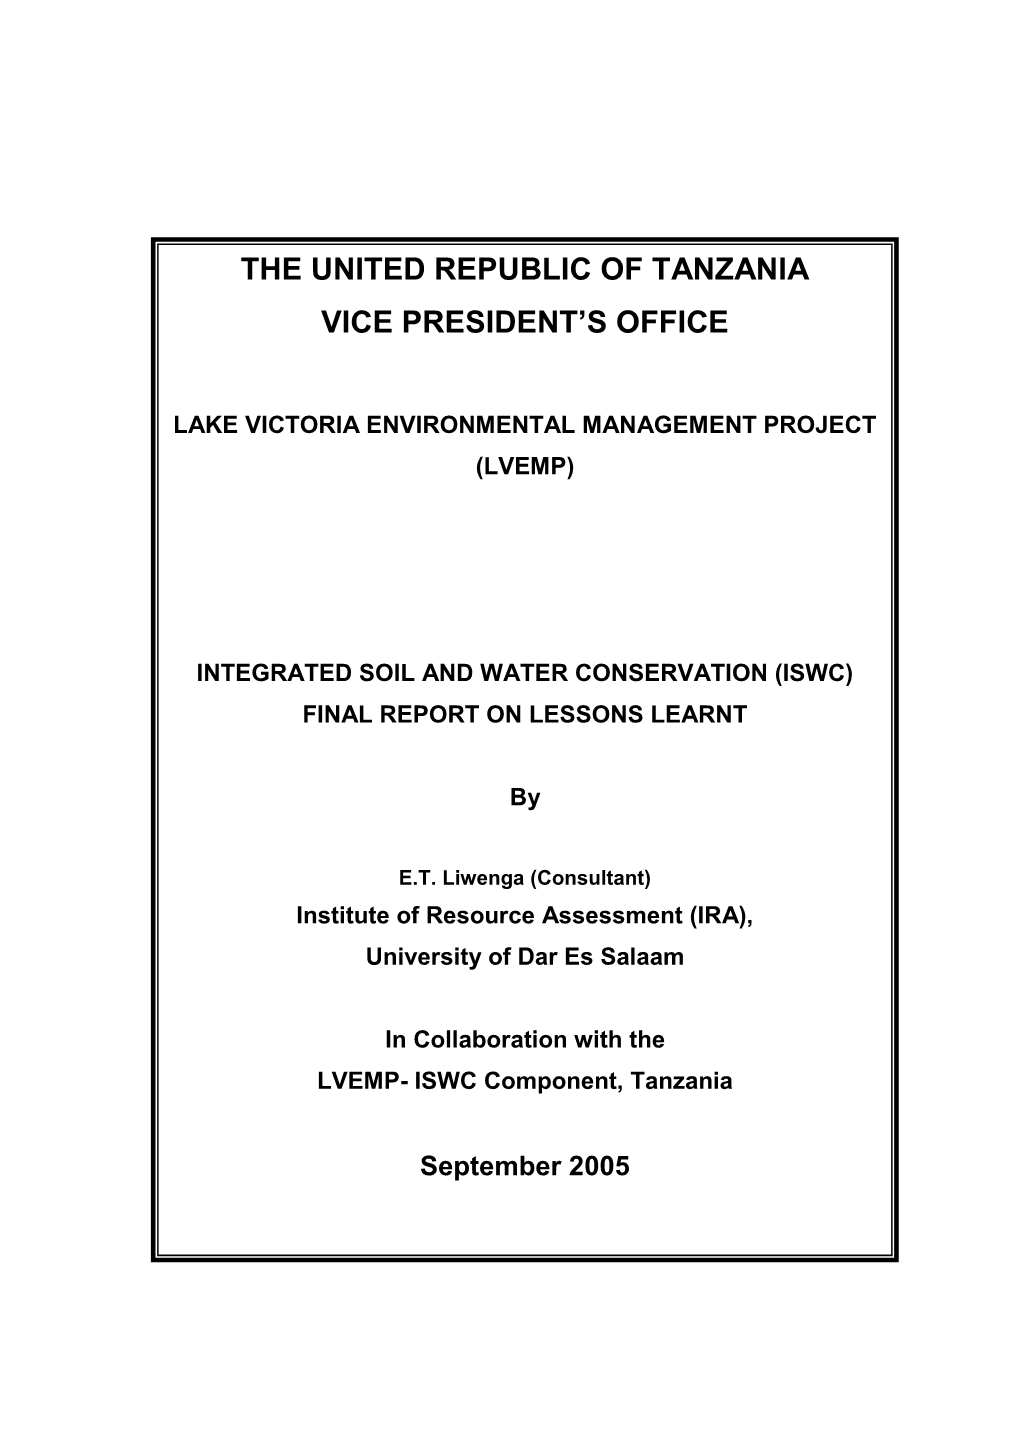 The United Republic of Tanzania Vice President's